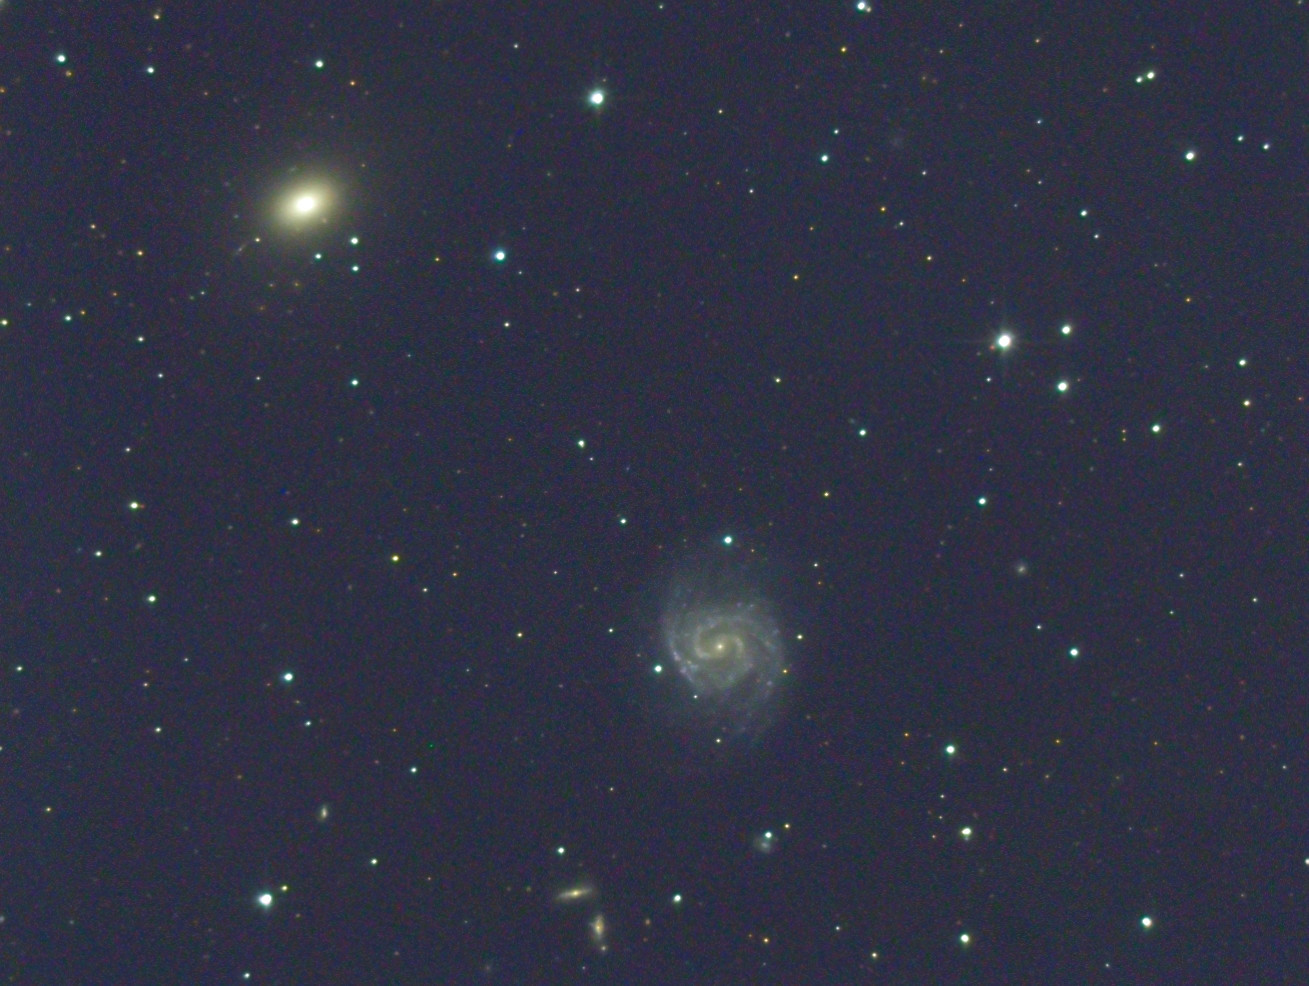 NGC 1042